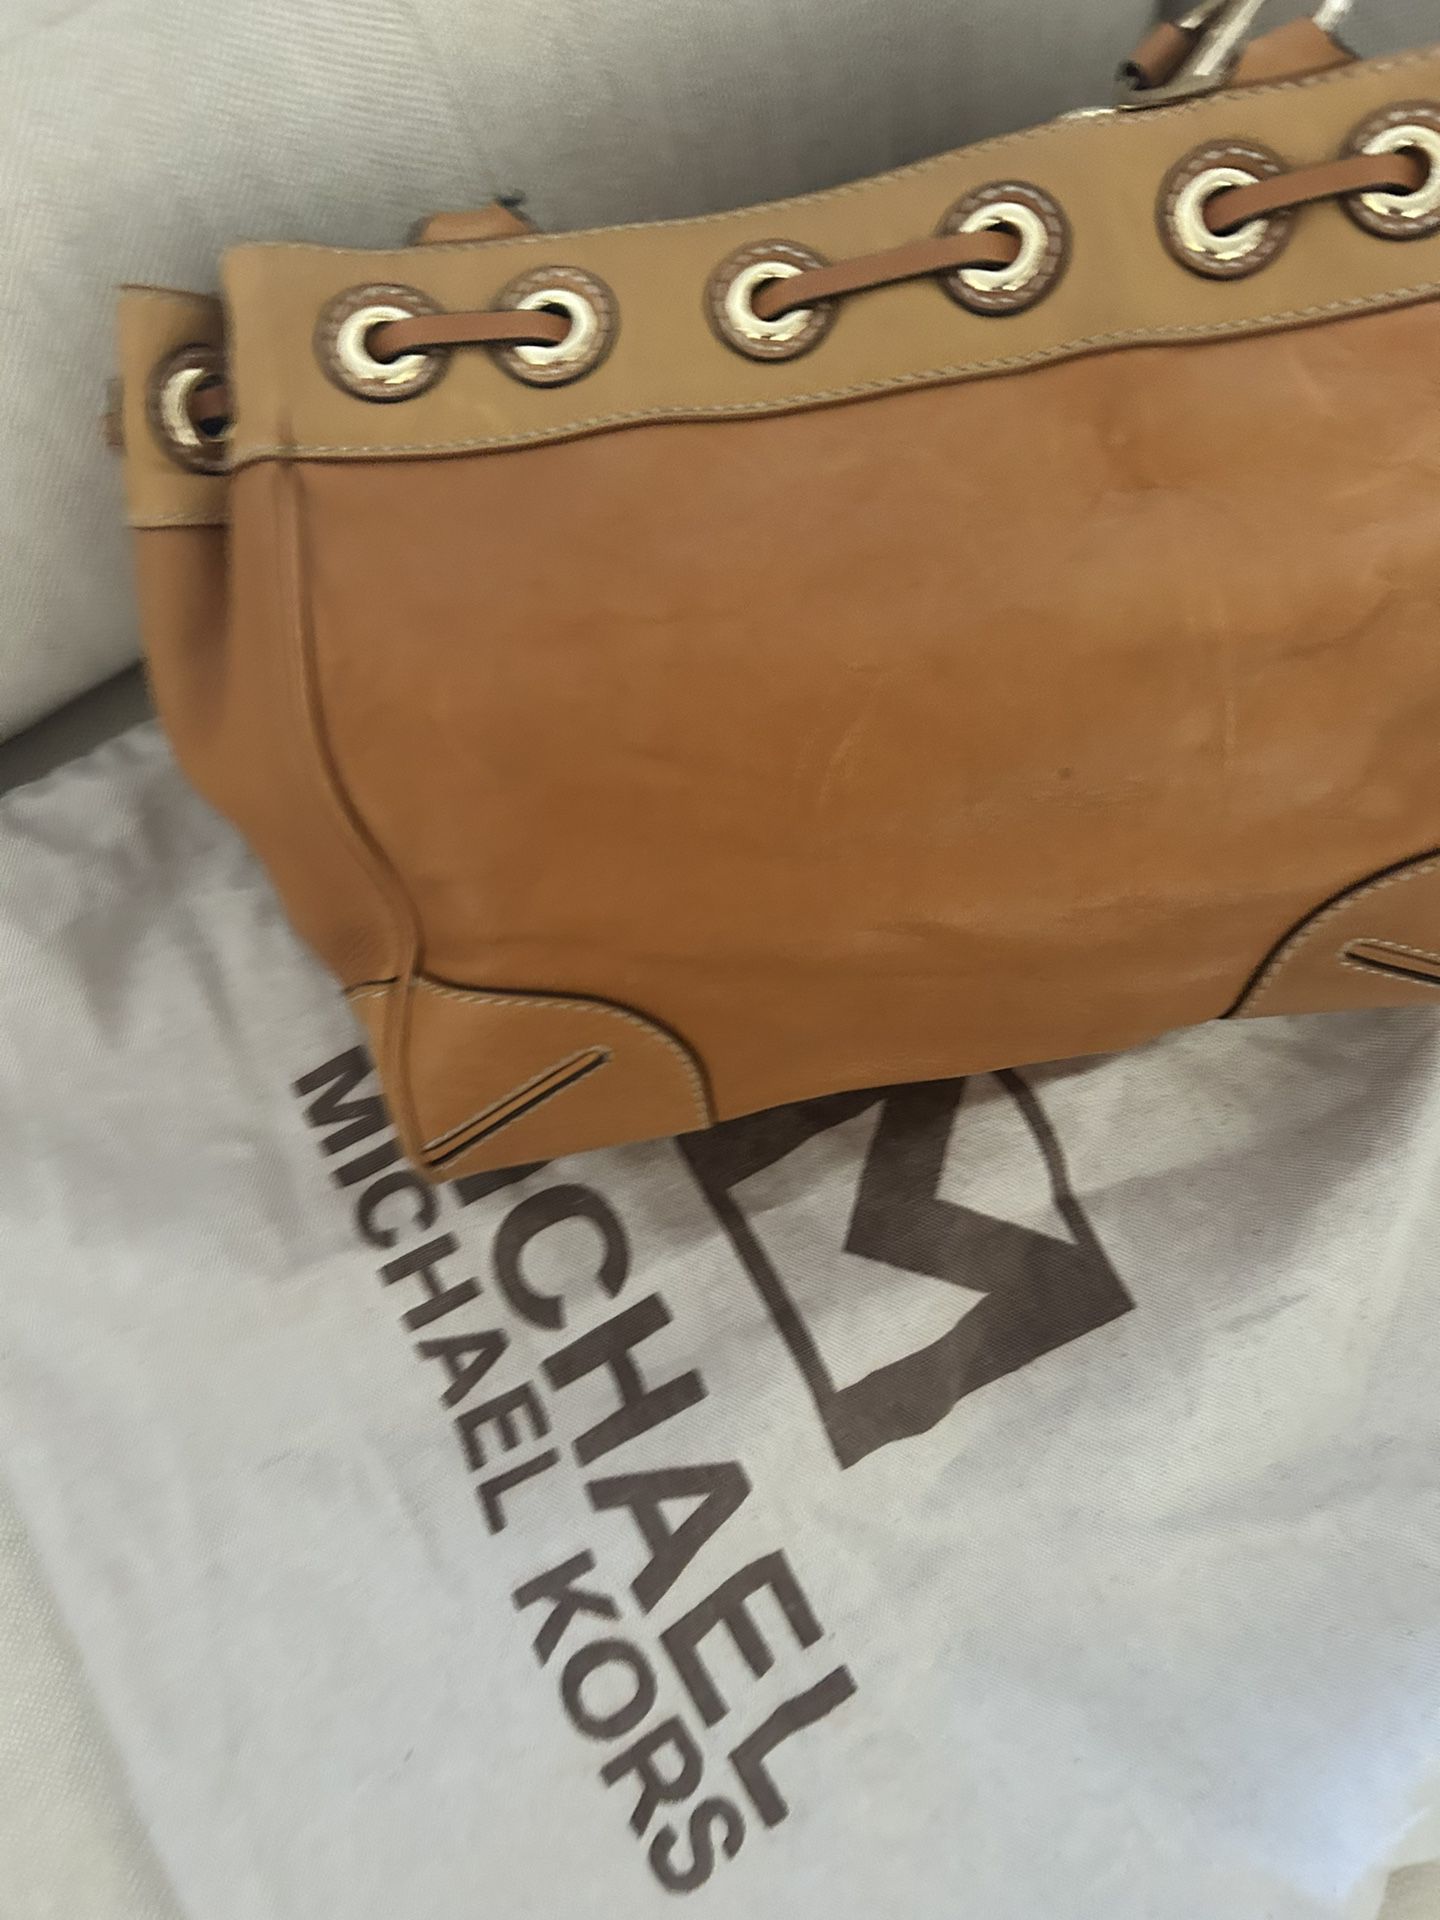 Leather Michael Kors Tan Bag